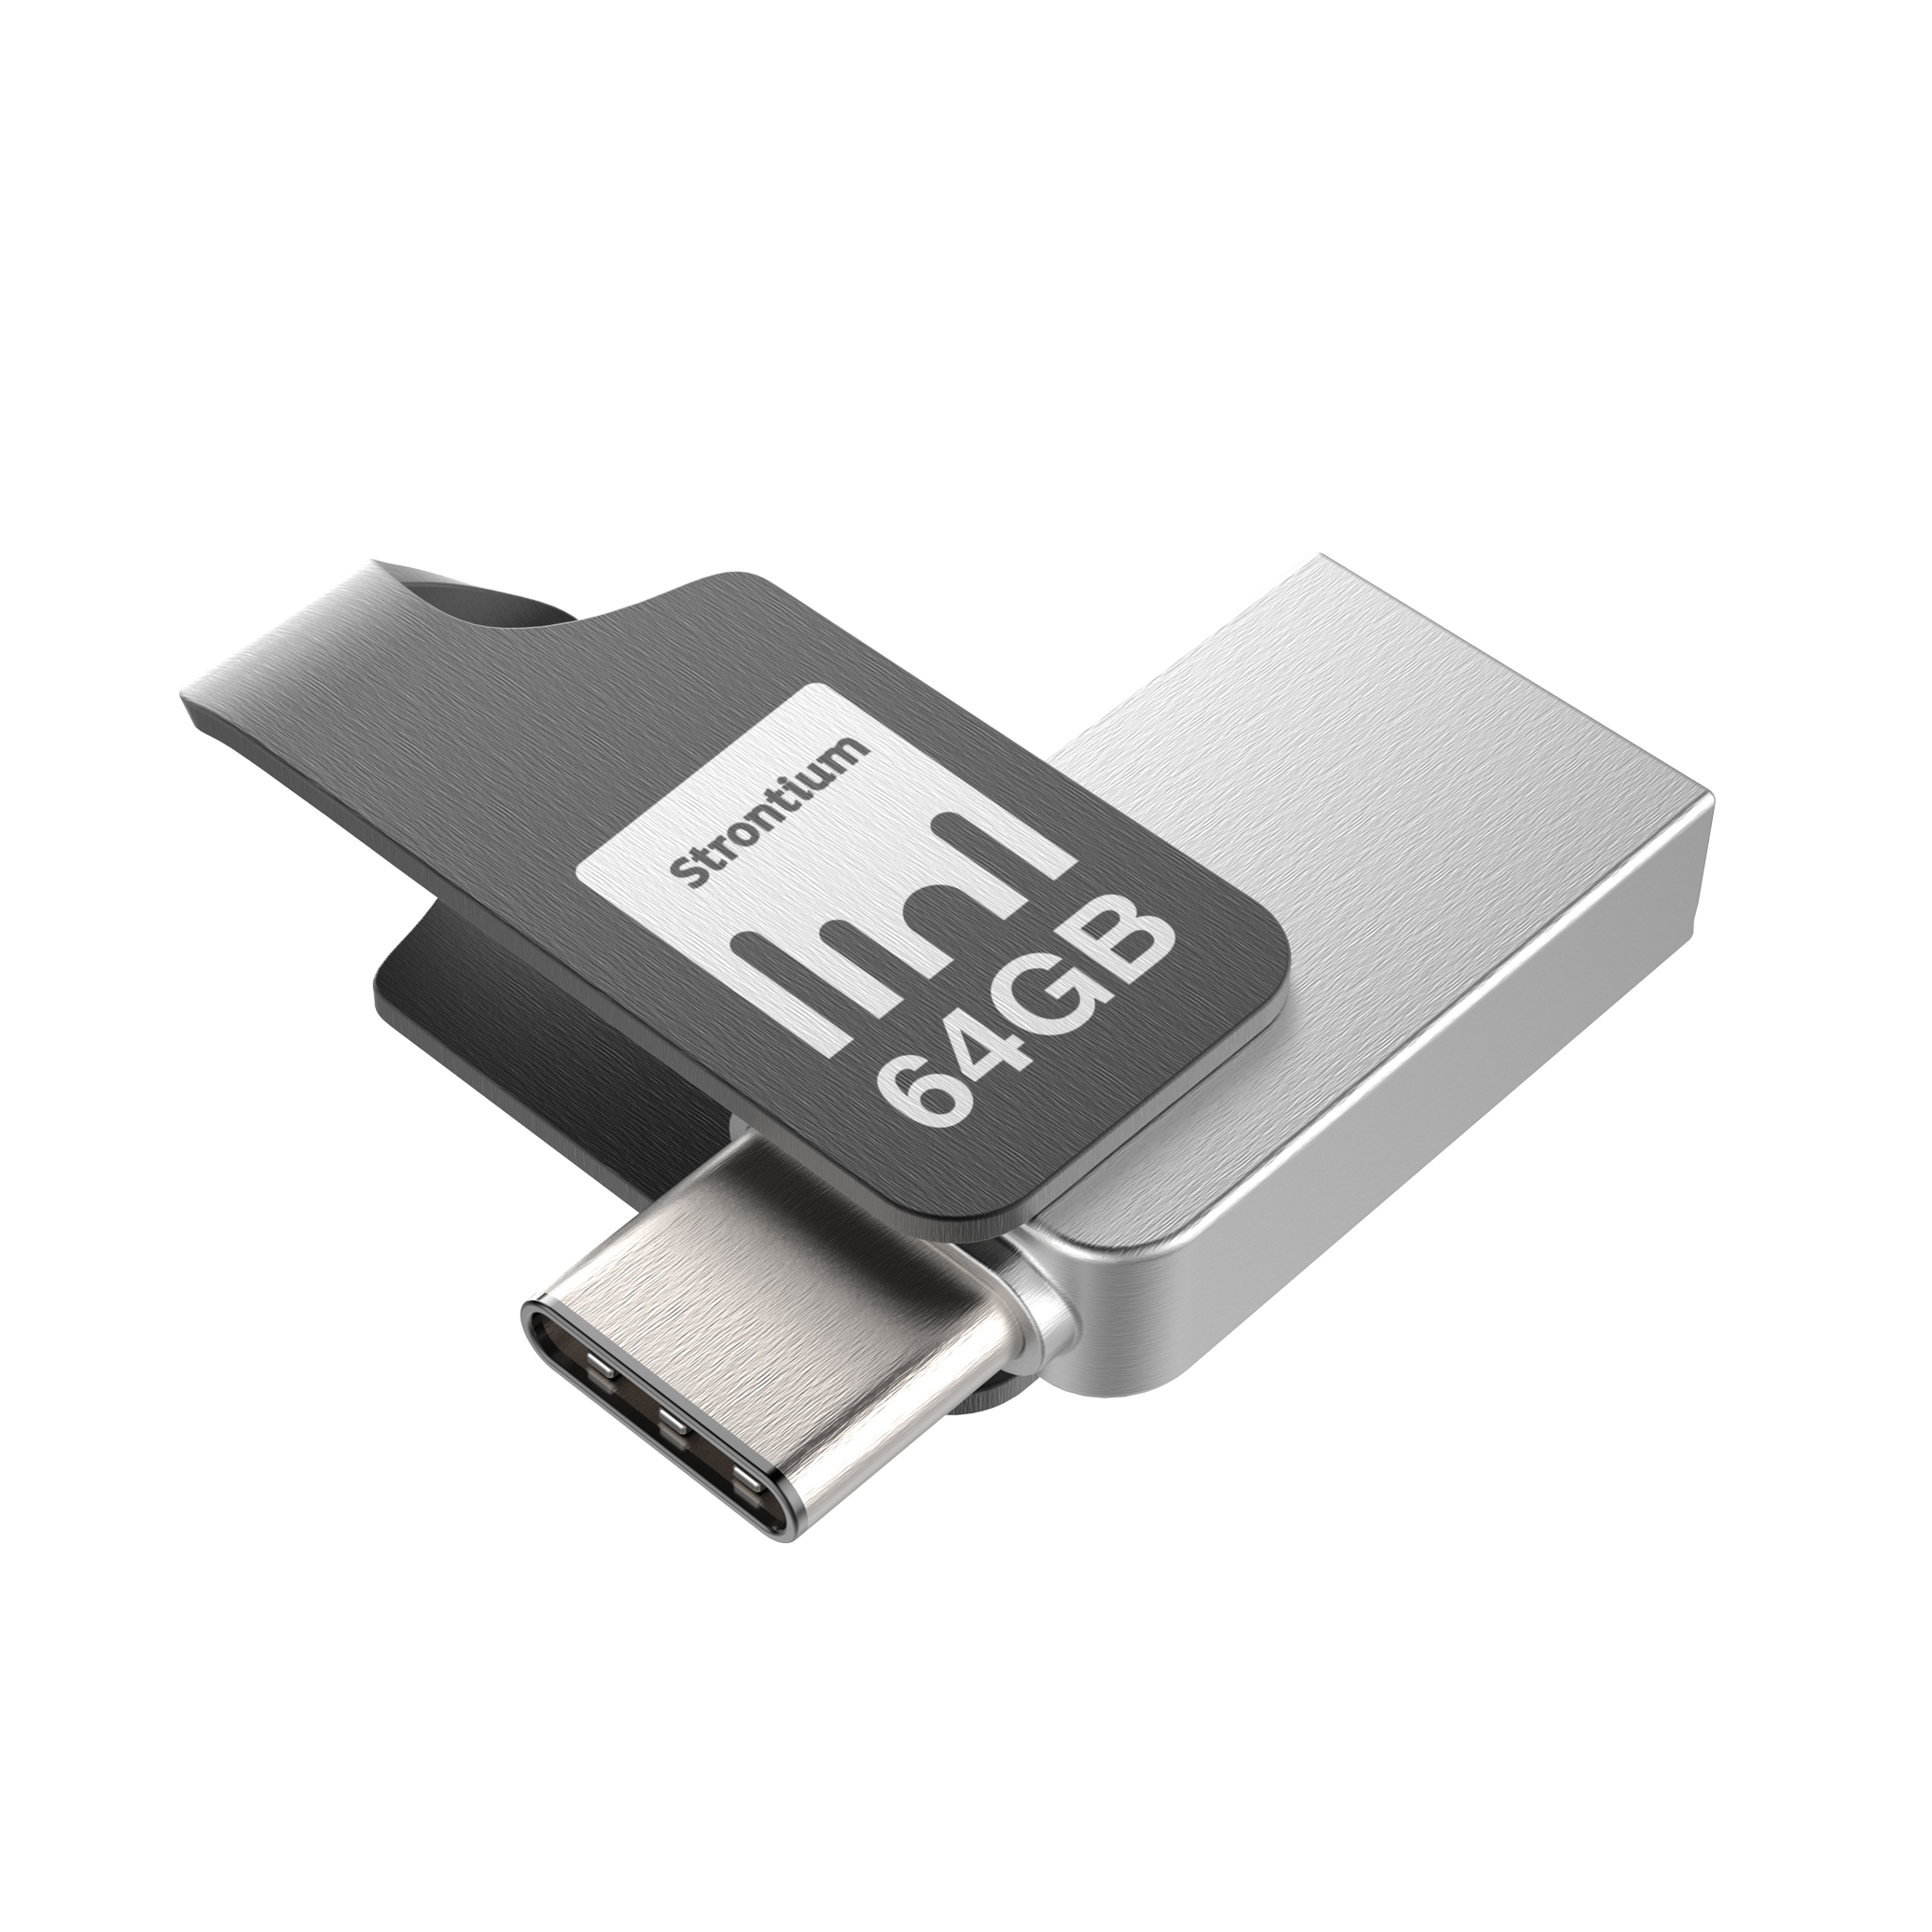 Strontium NITRO PLUS SERIES OTG USB 3.0 16GB 32GB 64GB 128GB for Android Phone 